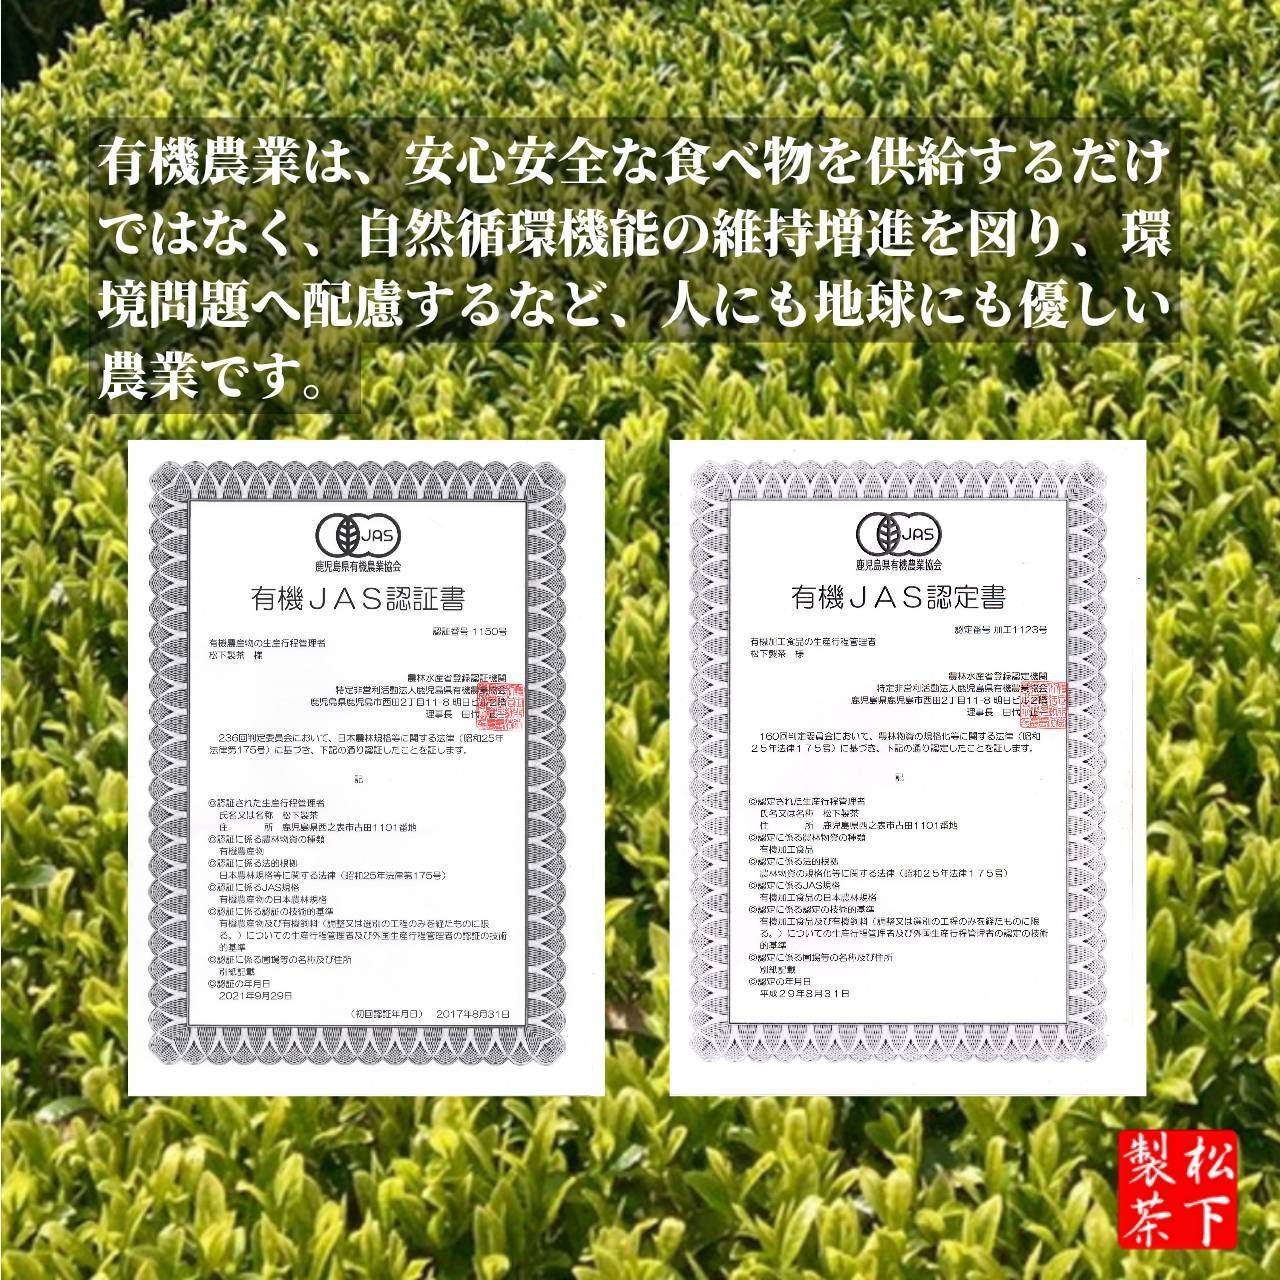 【2022年産】種子島の有機緑茶『さえみどり』 茶葉(リーフ) 100g-5